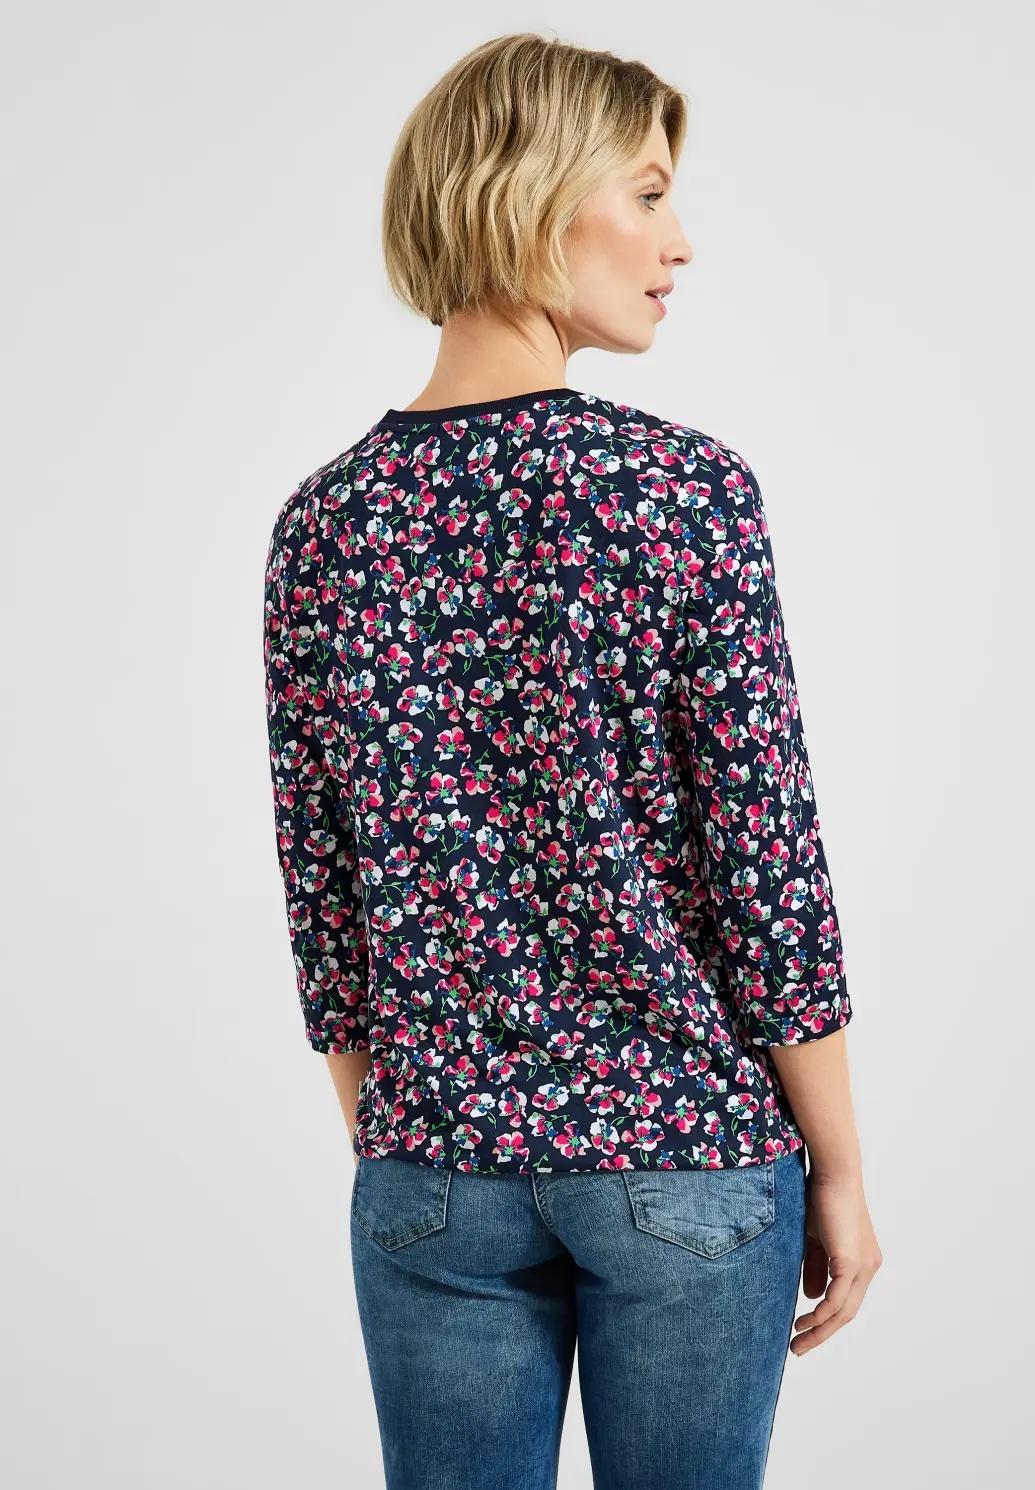 CECIL tričko s kvetinovým vzorom, mod